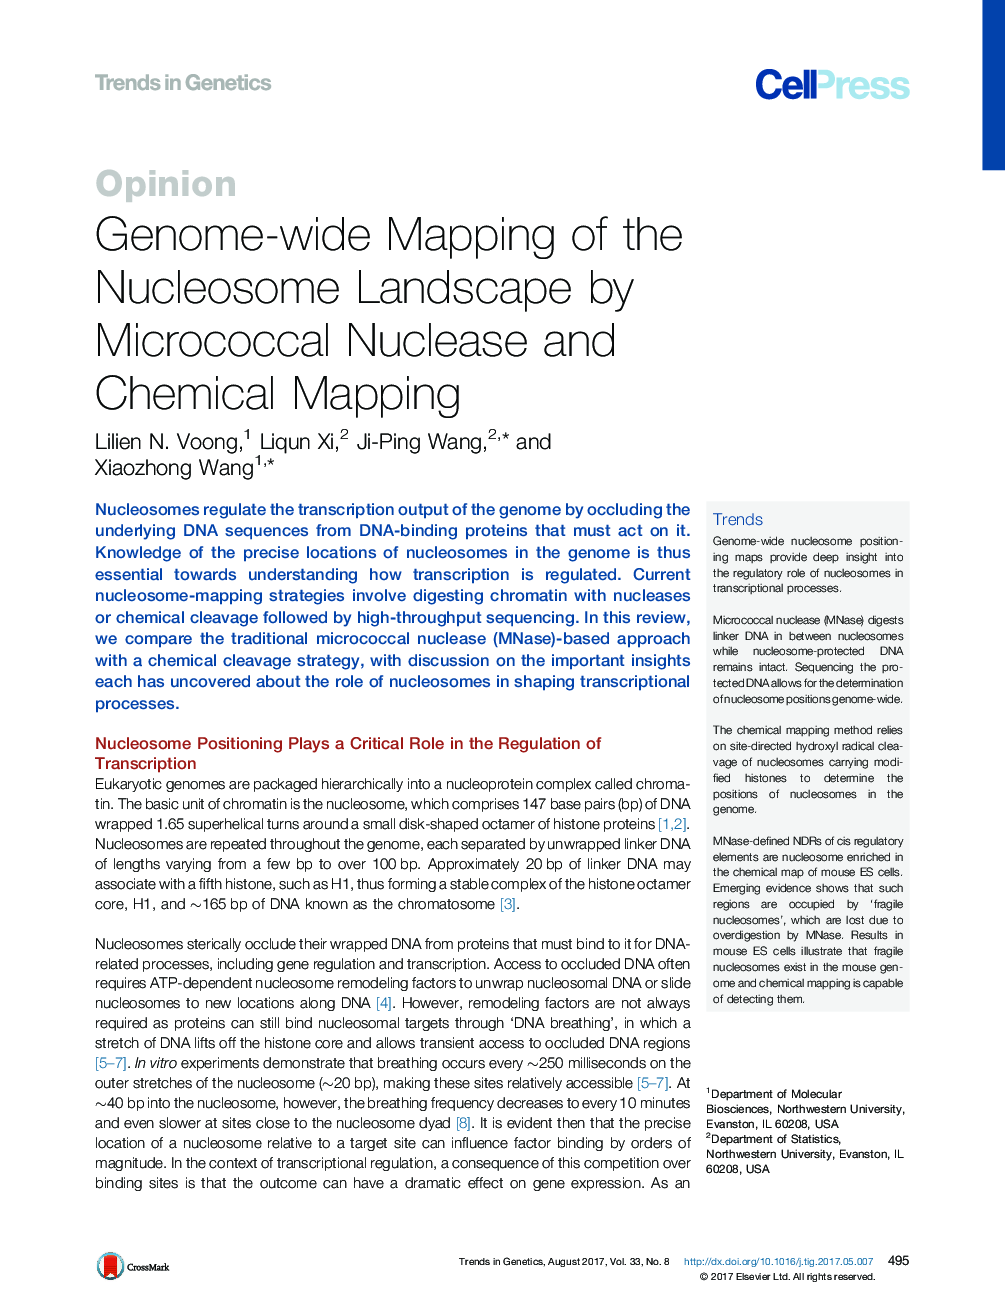 نقشه برداری بافت ژنوم چشم انداز هسته ای به وسیله ناکافی و نقشه برداری شیمیایی با میکروکوک 